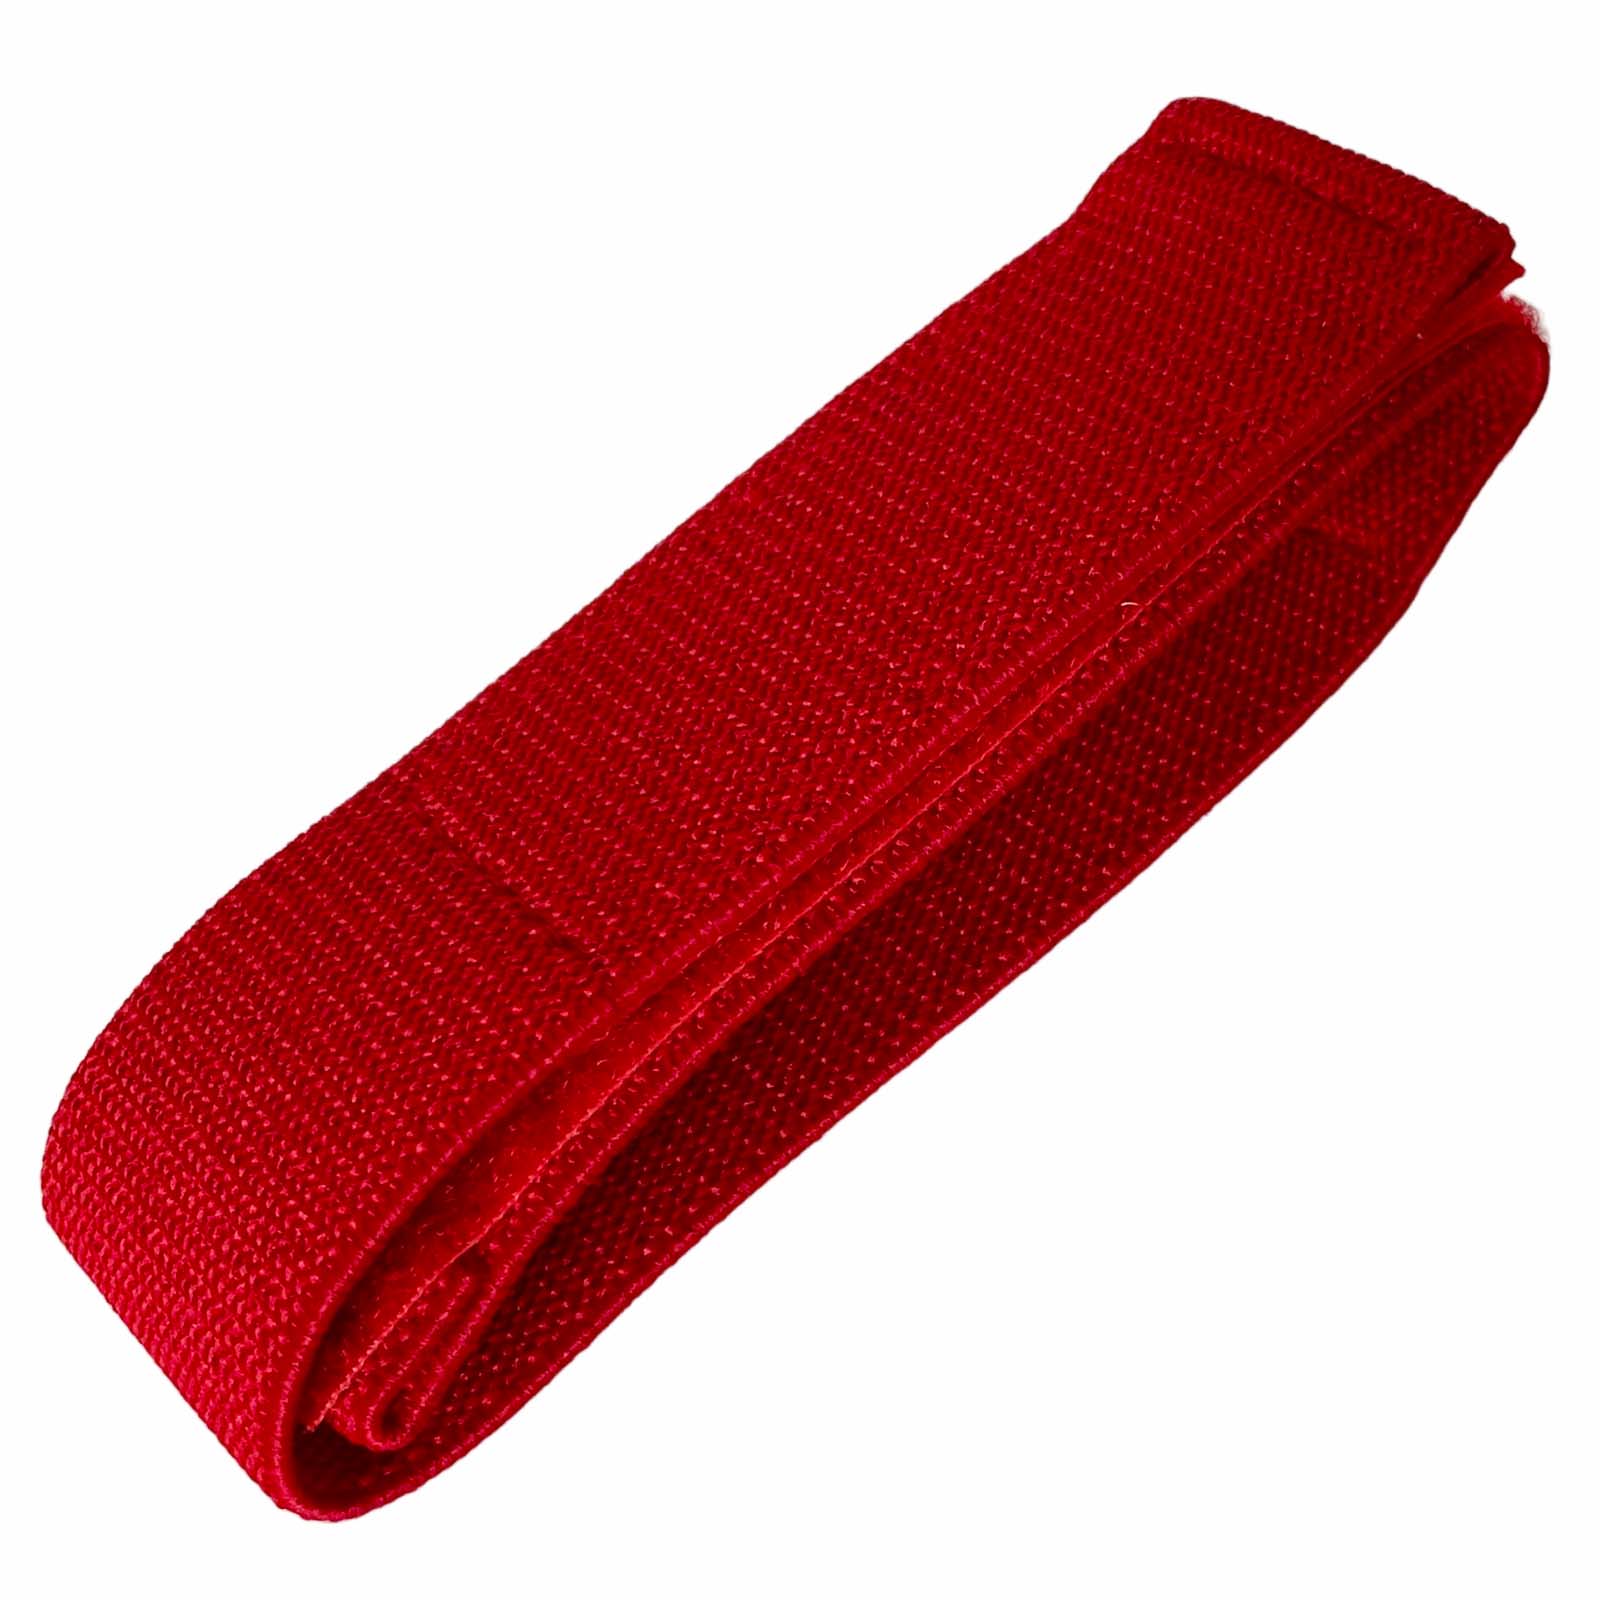 Купить кровоостанавливающий бандаж первой помощи на липучке (красный)